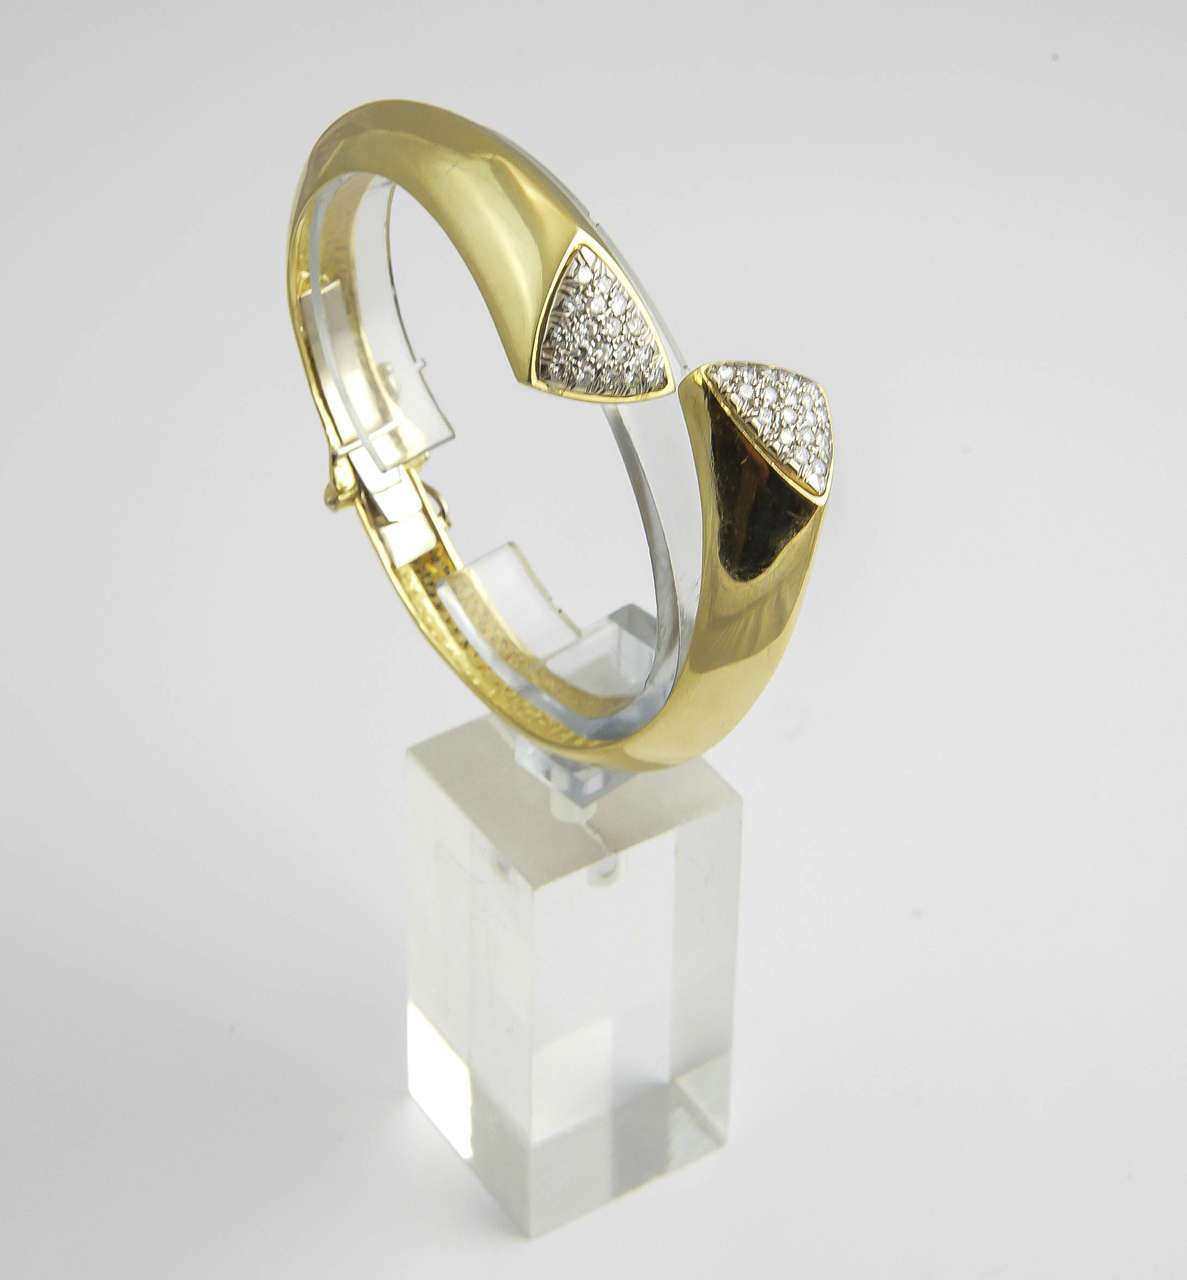 Bracelet géométrique à charnière en or 18k avec triangles en diamant pavé.
La dimension intérieure est de 6,5